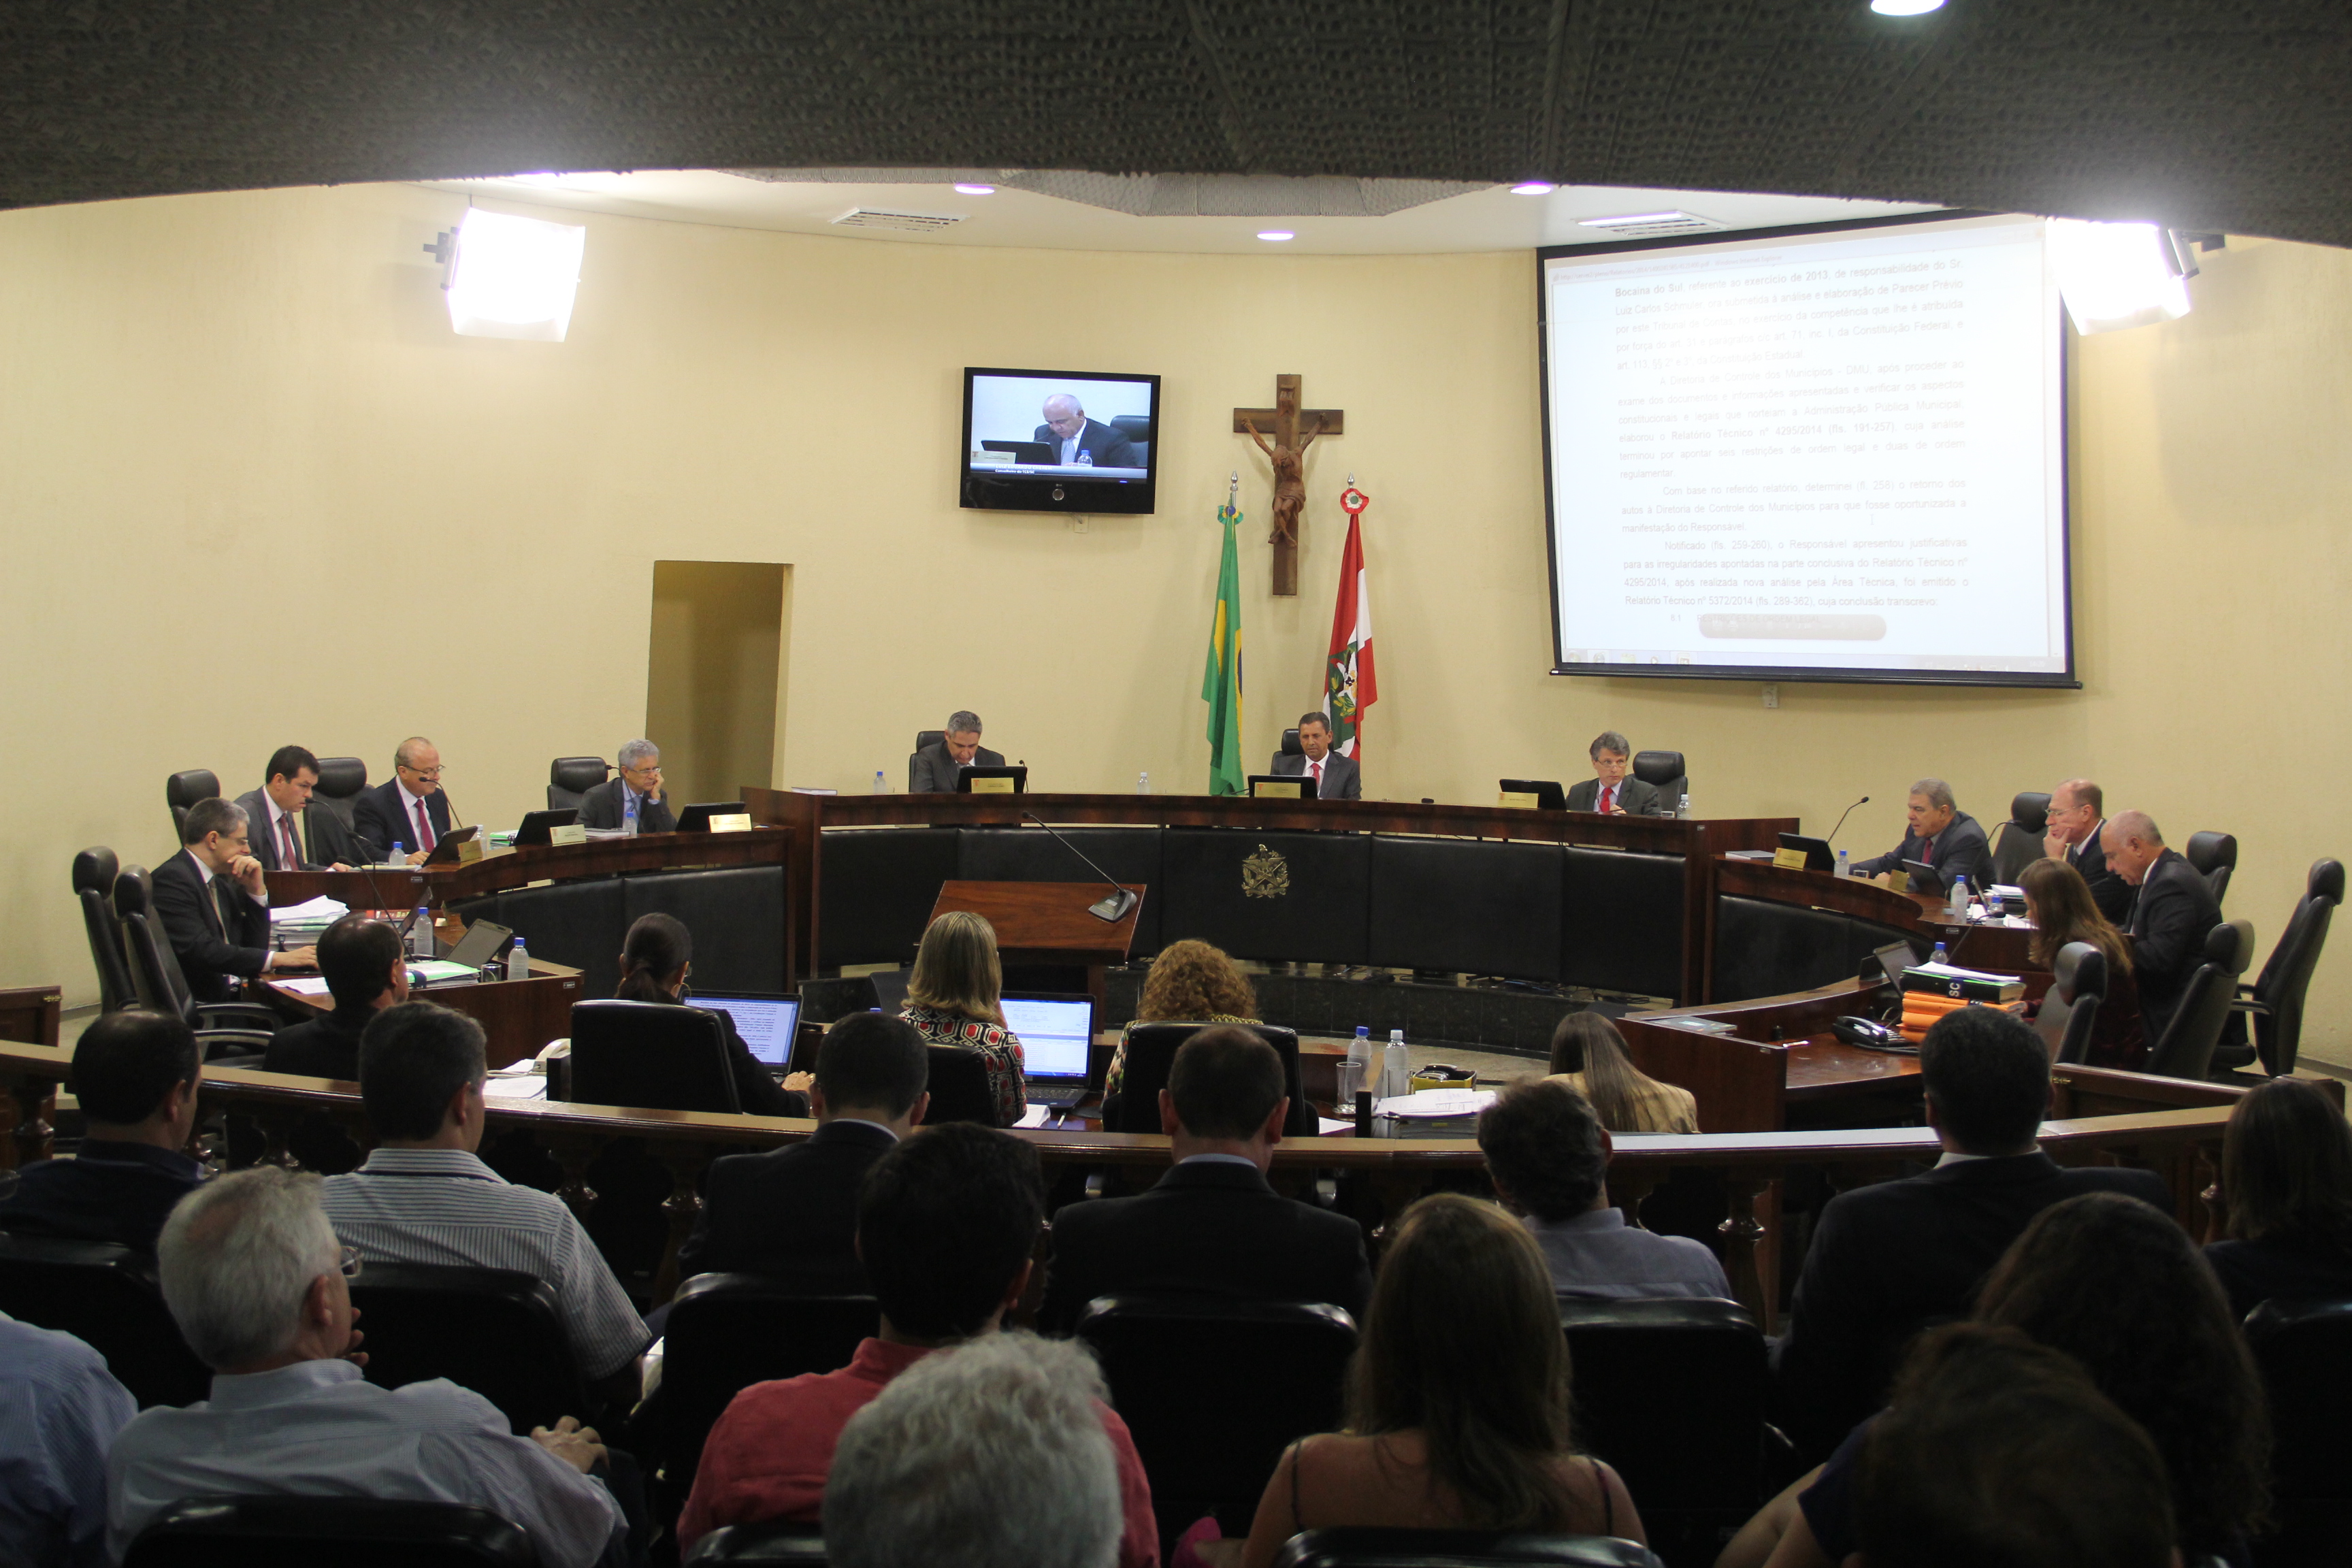 Contas/2013 de 11 municípios receberam parecer prévio do TCE/SC pela rejeição